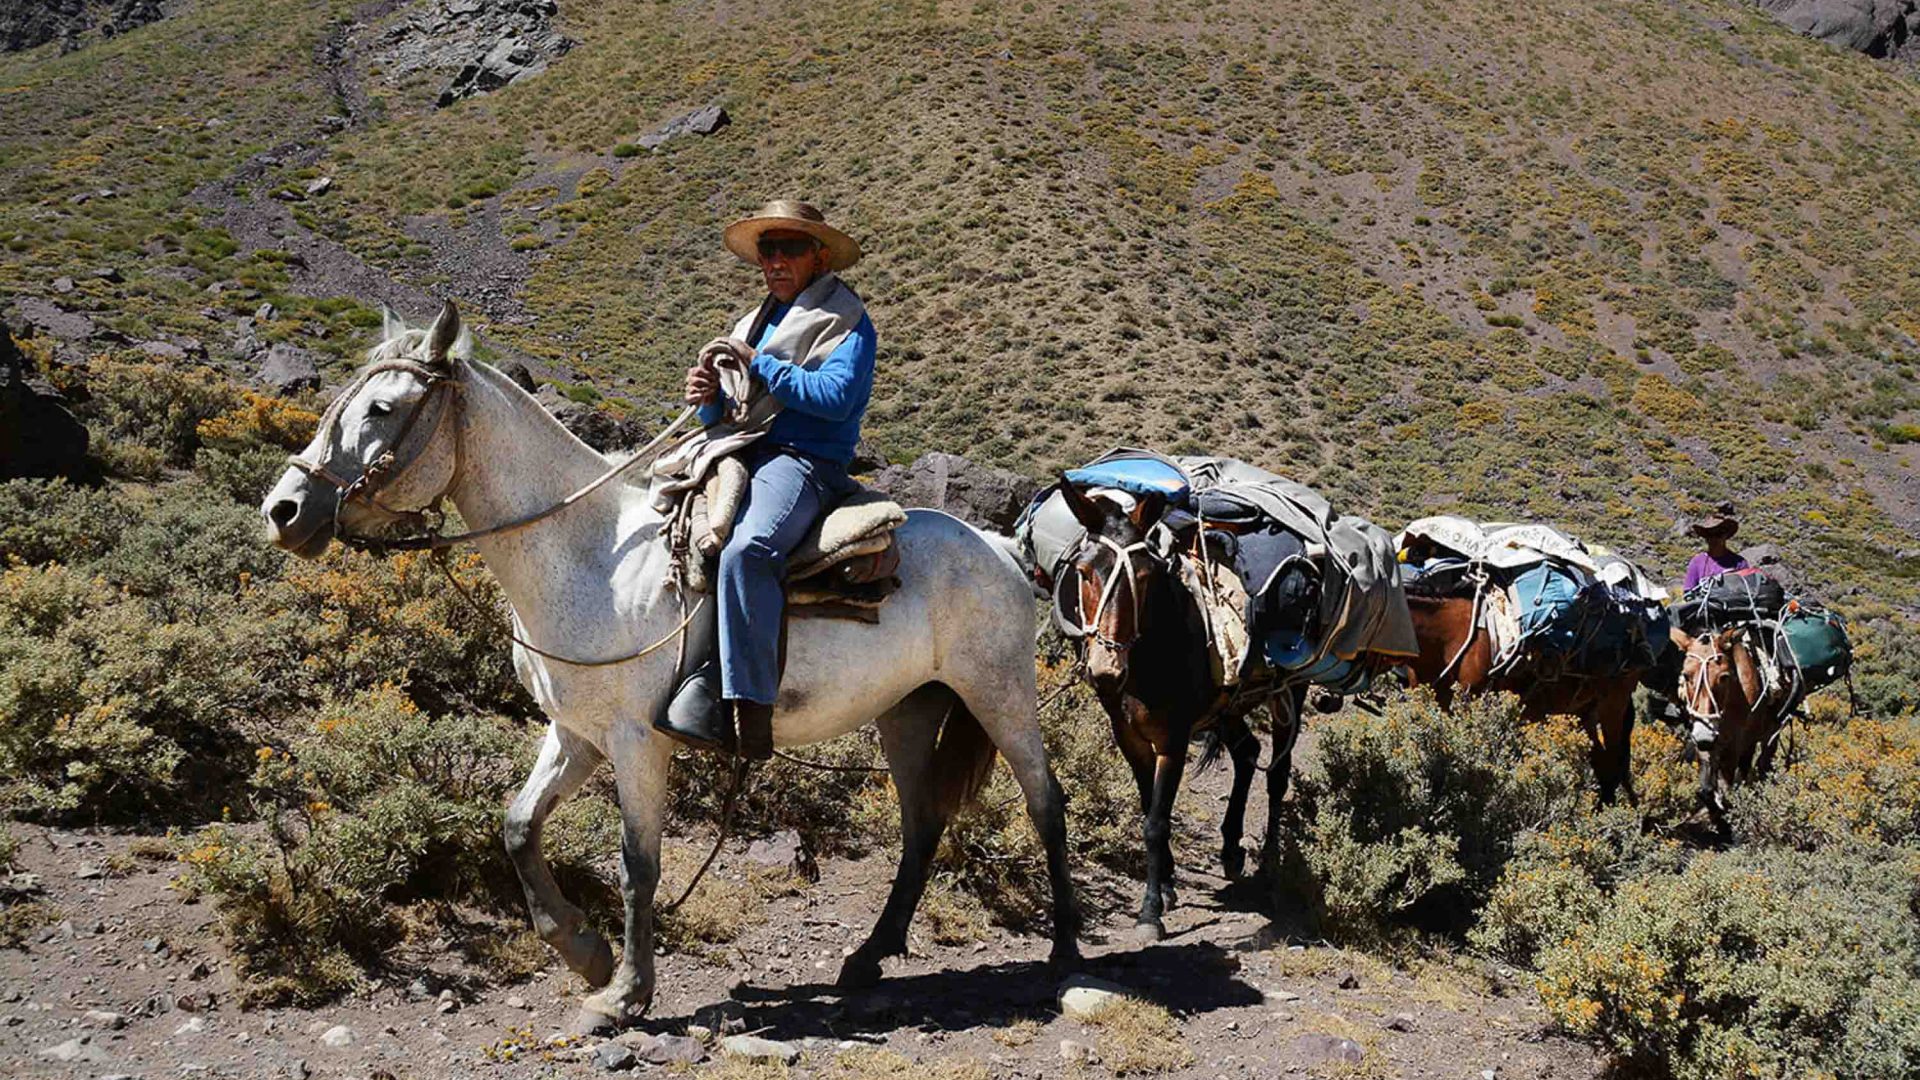 Rancheros on horses in an arid valley.